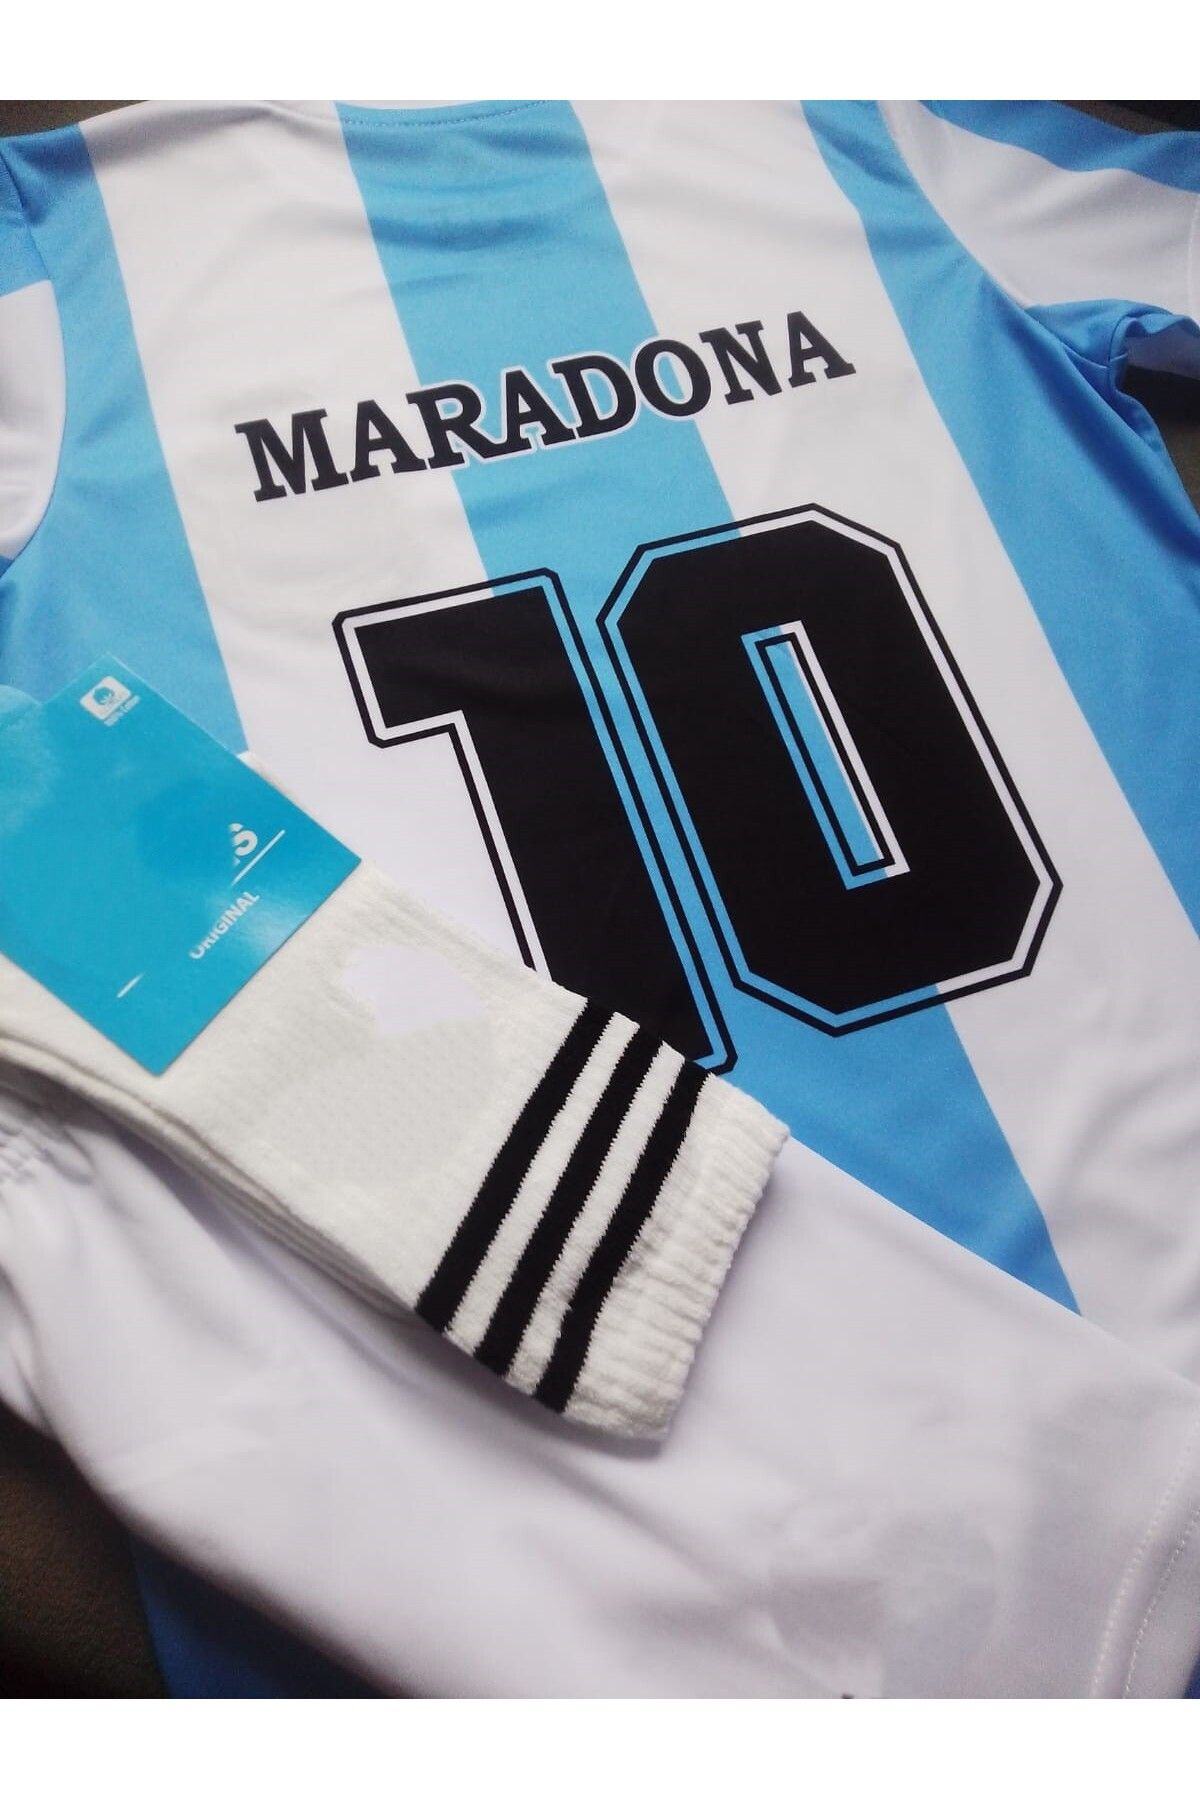 Armageddon Arjantin Milli Takim Efsane Maradona Formasi Şort Ve Çorap Seti